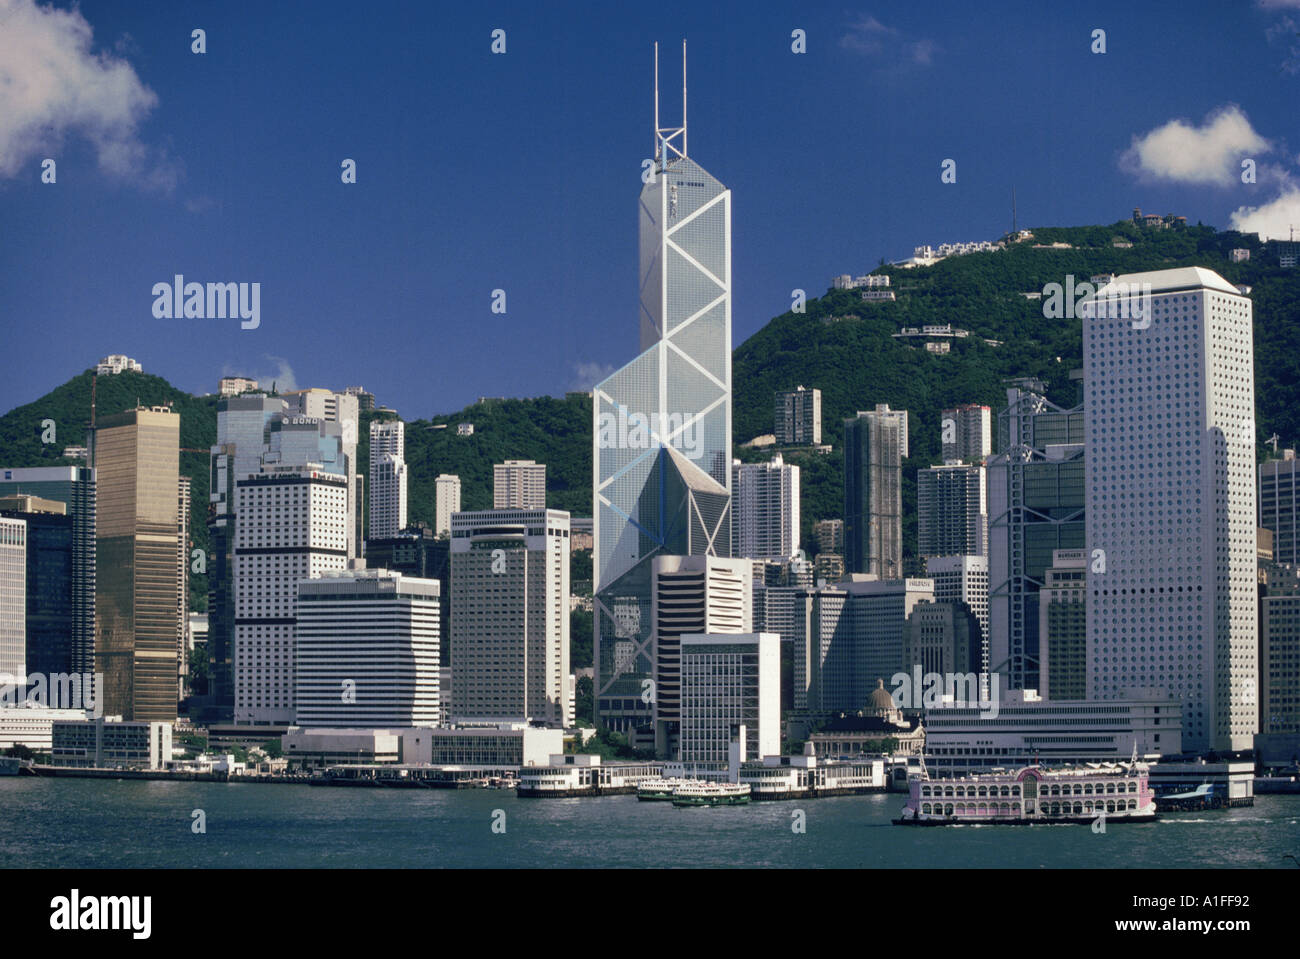 Die Skyline der Stadt vom Hafen mit der Bank of China in der Mitte auf Hong Kong Island Asien G Hellier Stockfoto